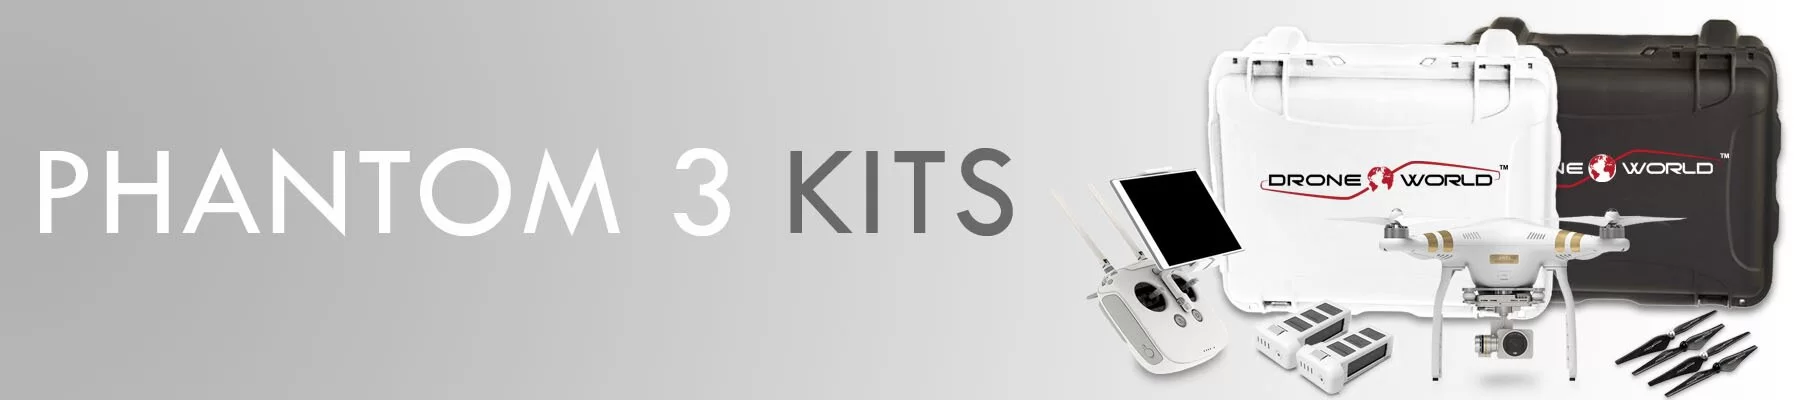 Phantom 3 Kits